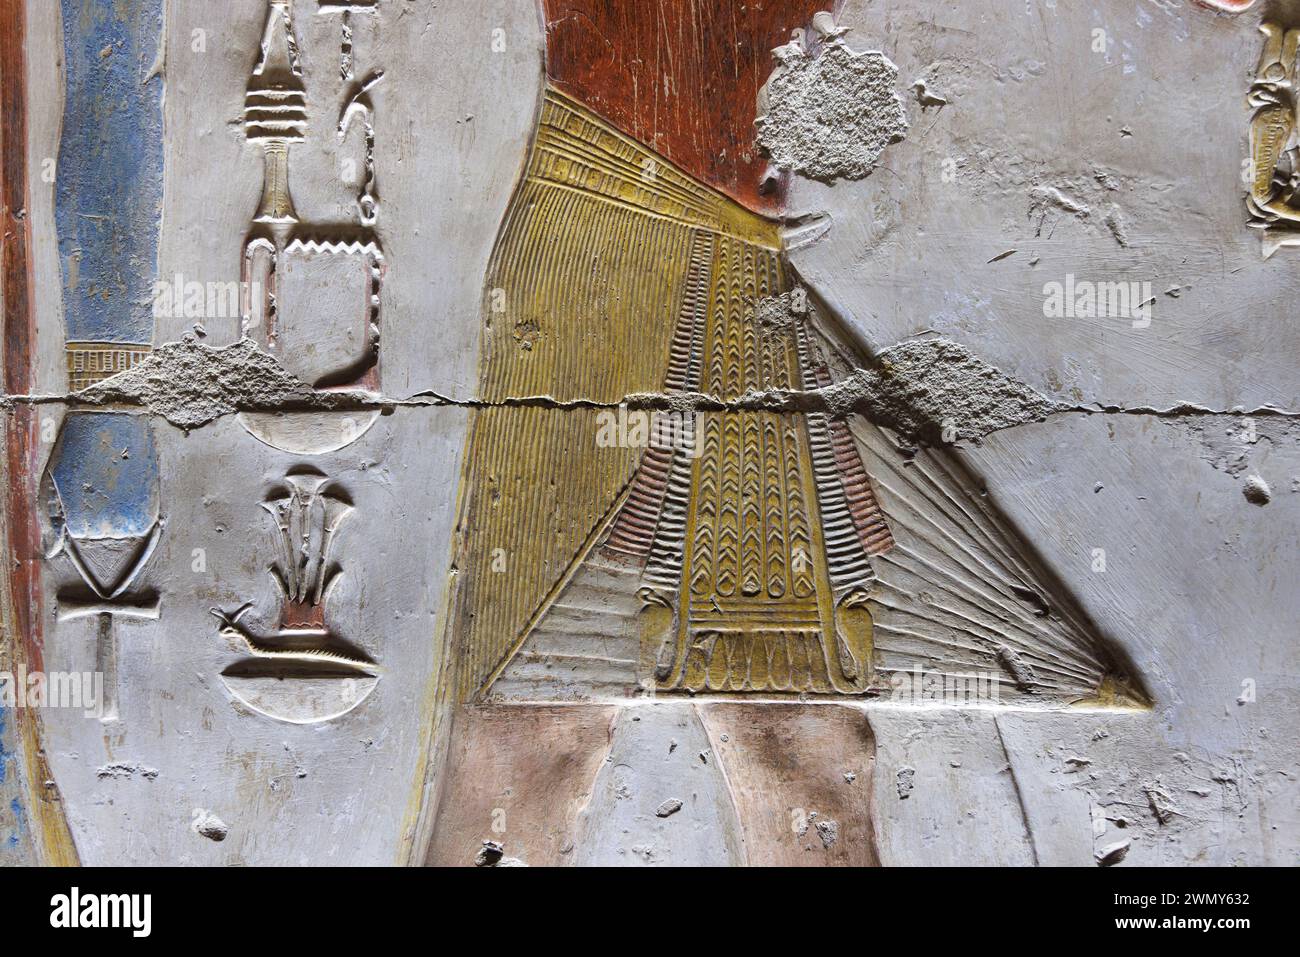 Egitto, Sohag, Abydos, Abydos, città di pellegrinaggio dei faraoni dichiarata Patrimonio dell'Umanità dall'UNESCO, tempio di Seti i, bassorilievo di un loincloth Foto Stock